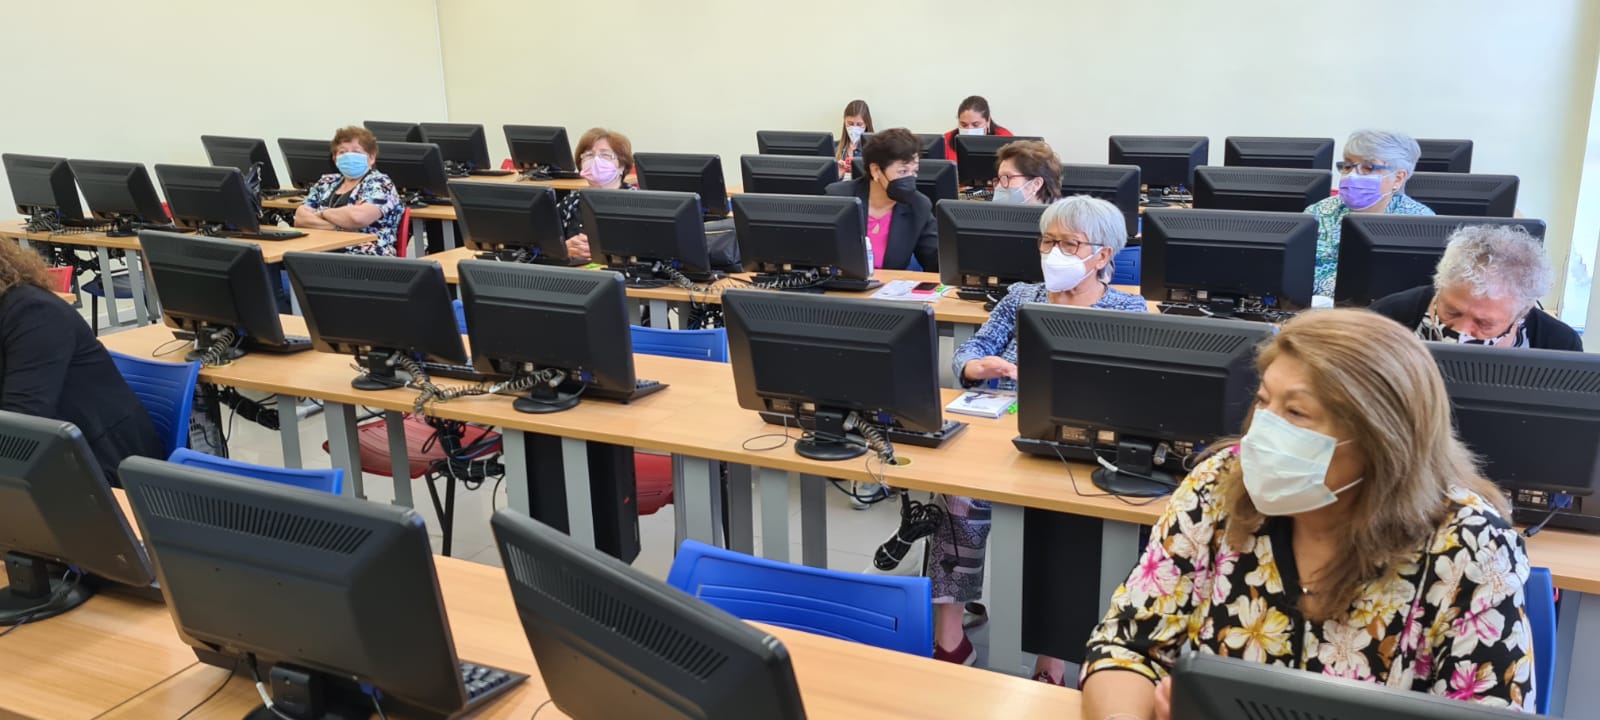 40 adultos mayores capacitados en alfabetización digital por AIEP Talca